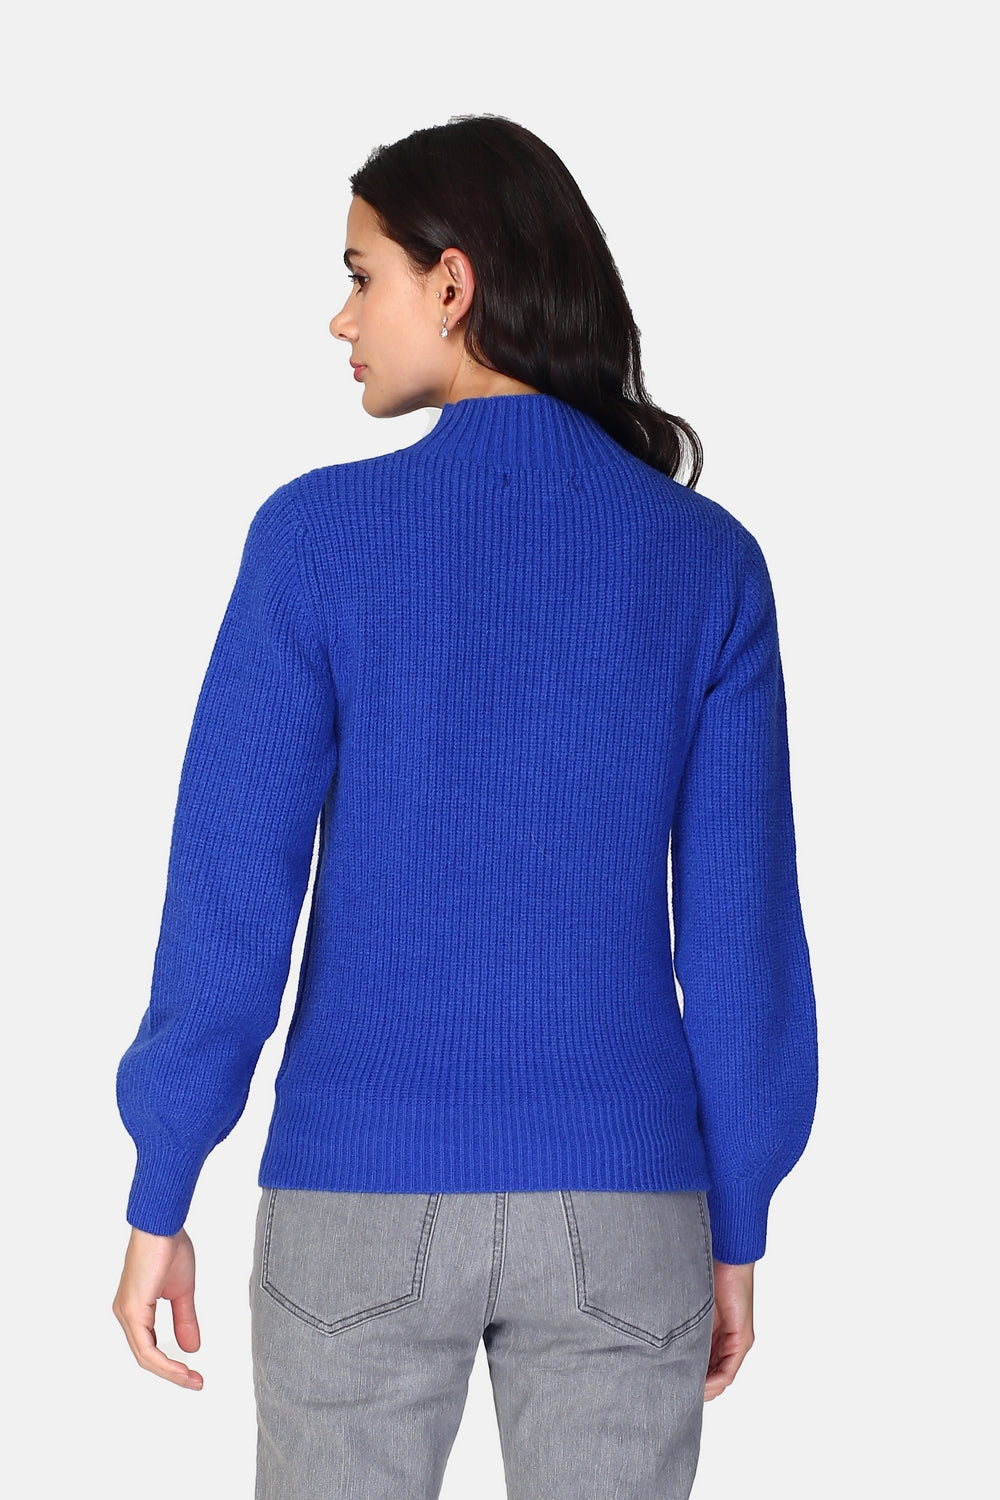 Hochgeschlossener Pullover mit langen Ärmeln, leicht gebauschten Zopfmustern vorne